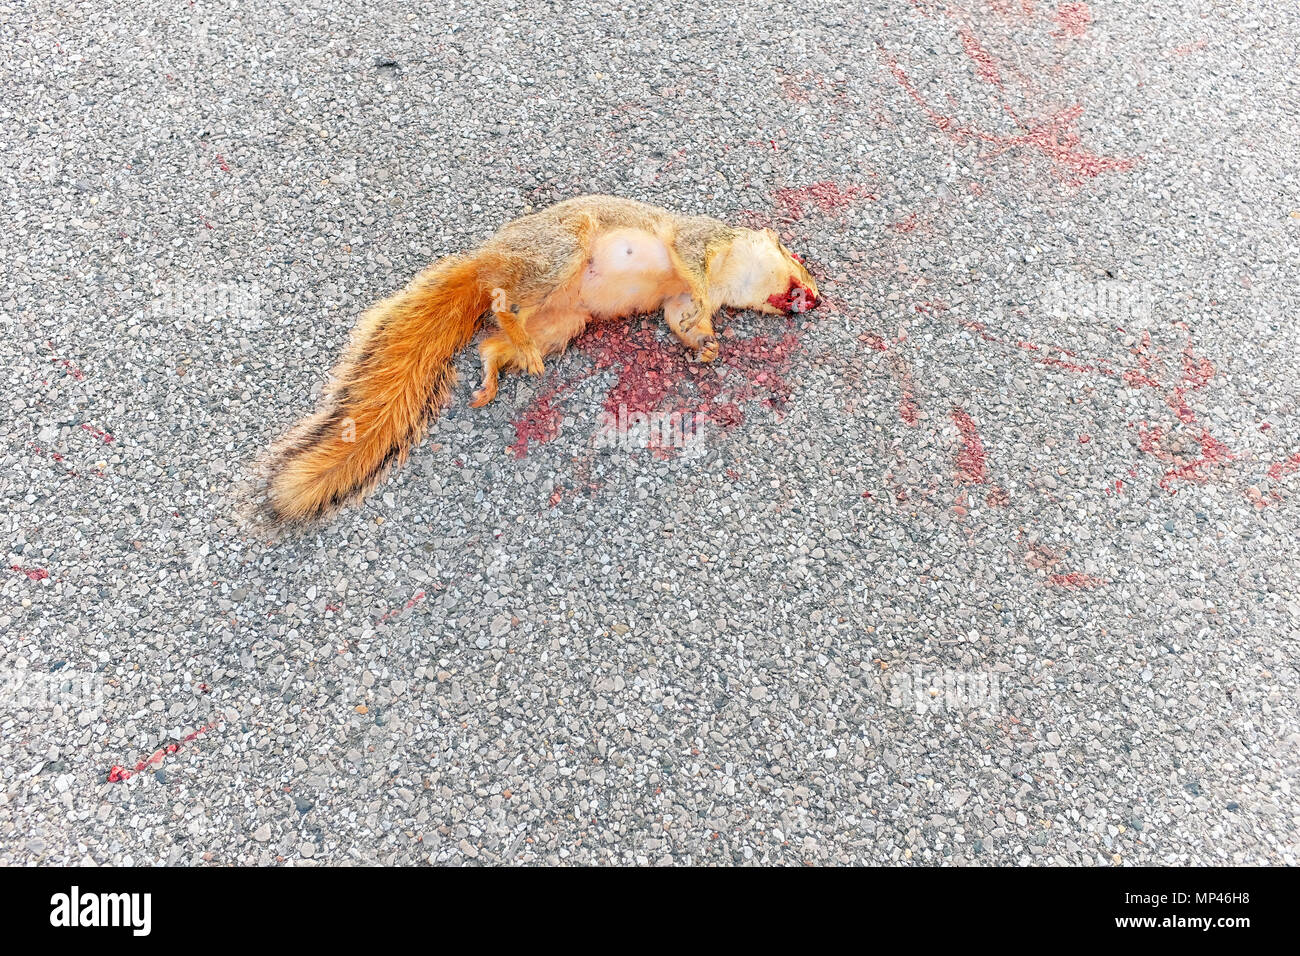 Sciurus Carolinensis, der östlichen graue Eichhörnchen, tot auf einer asphaltierten Straße vor kurzem getroffen und von einem Fahrzeug getötet. Stockfoto